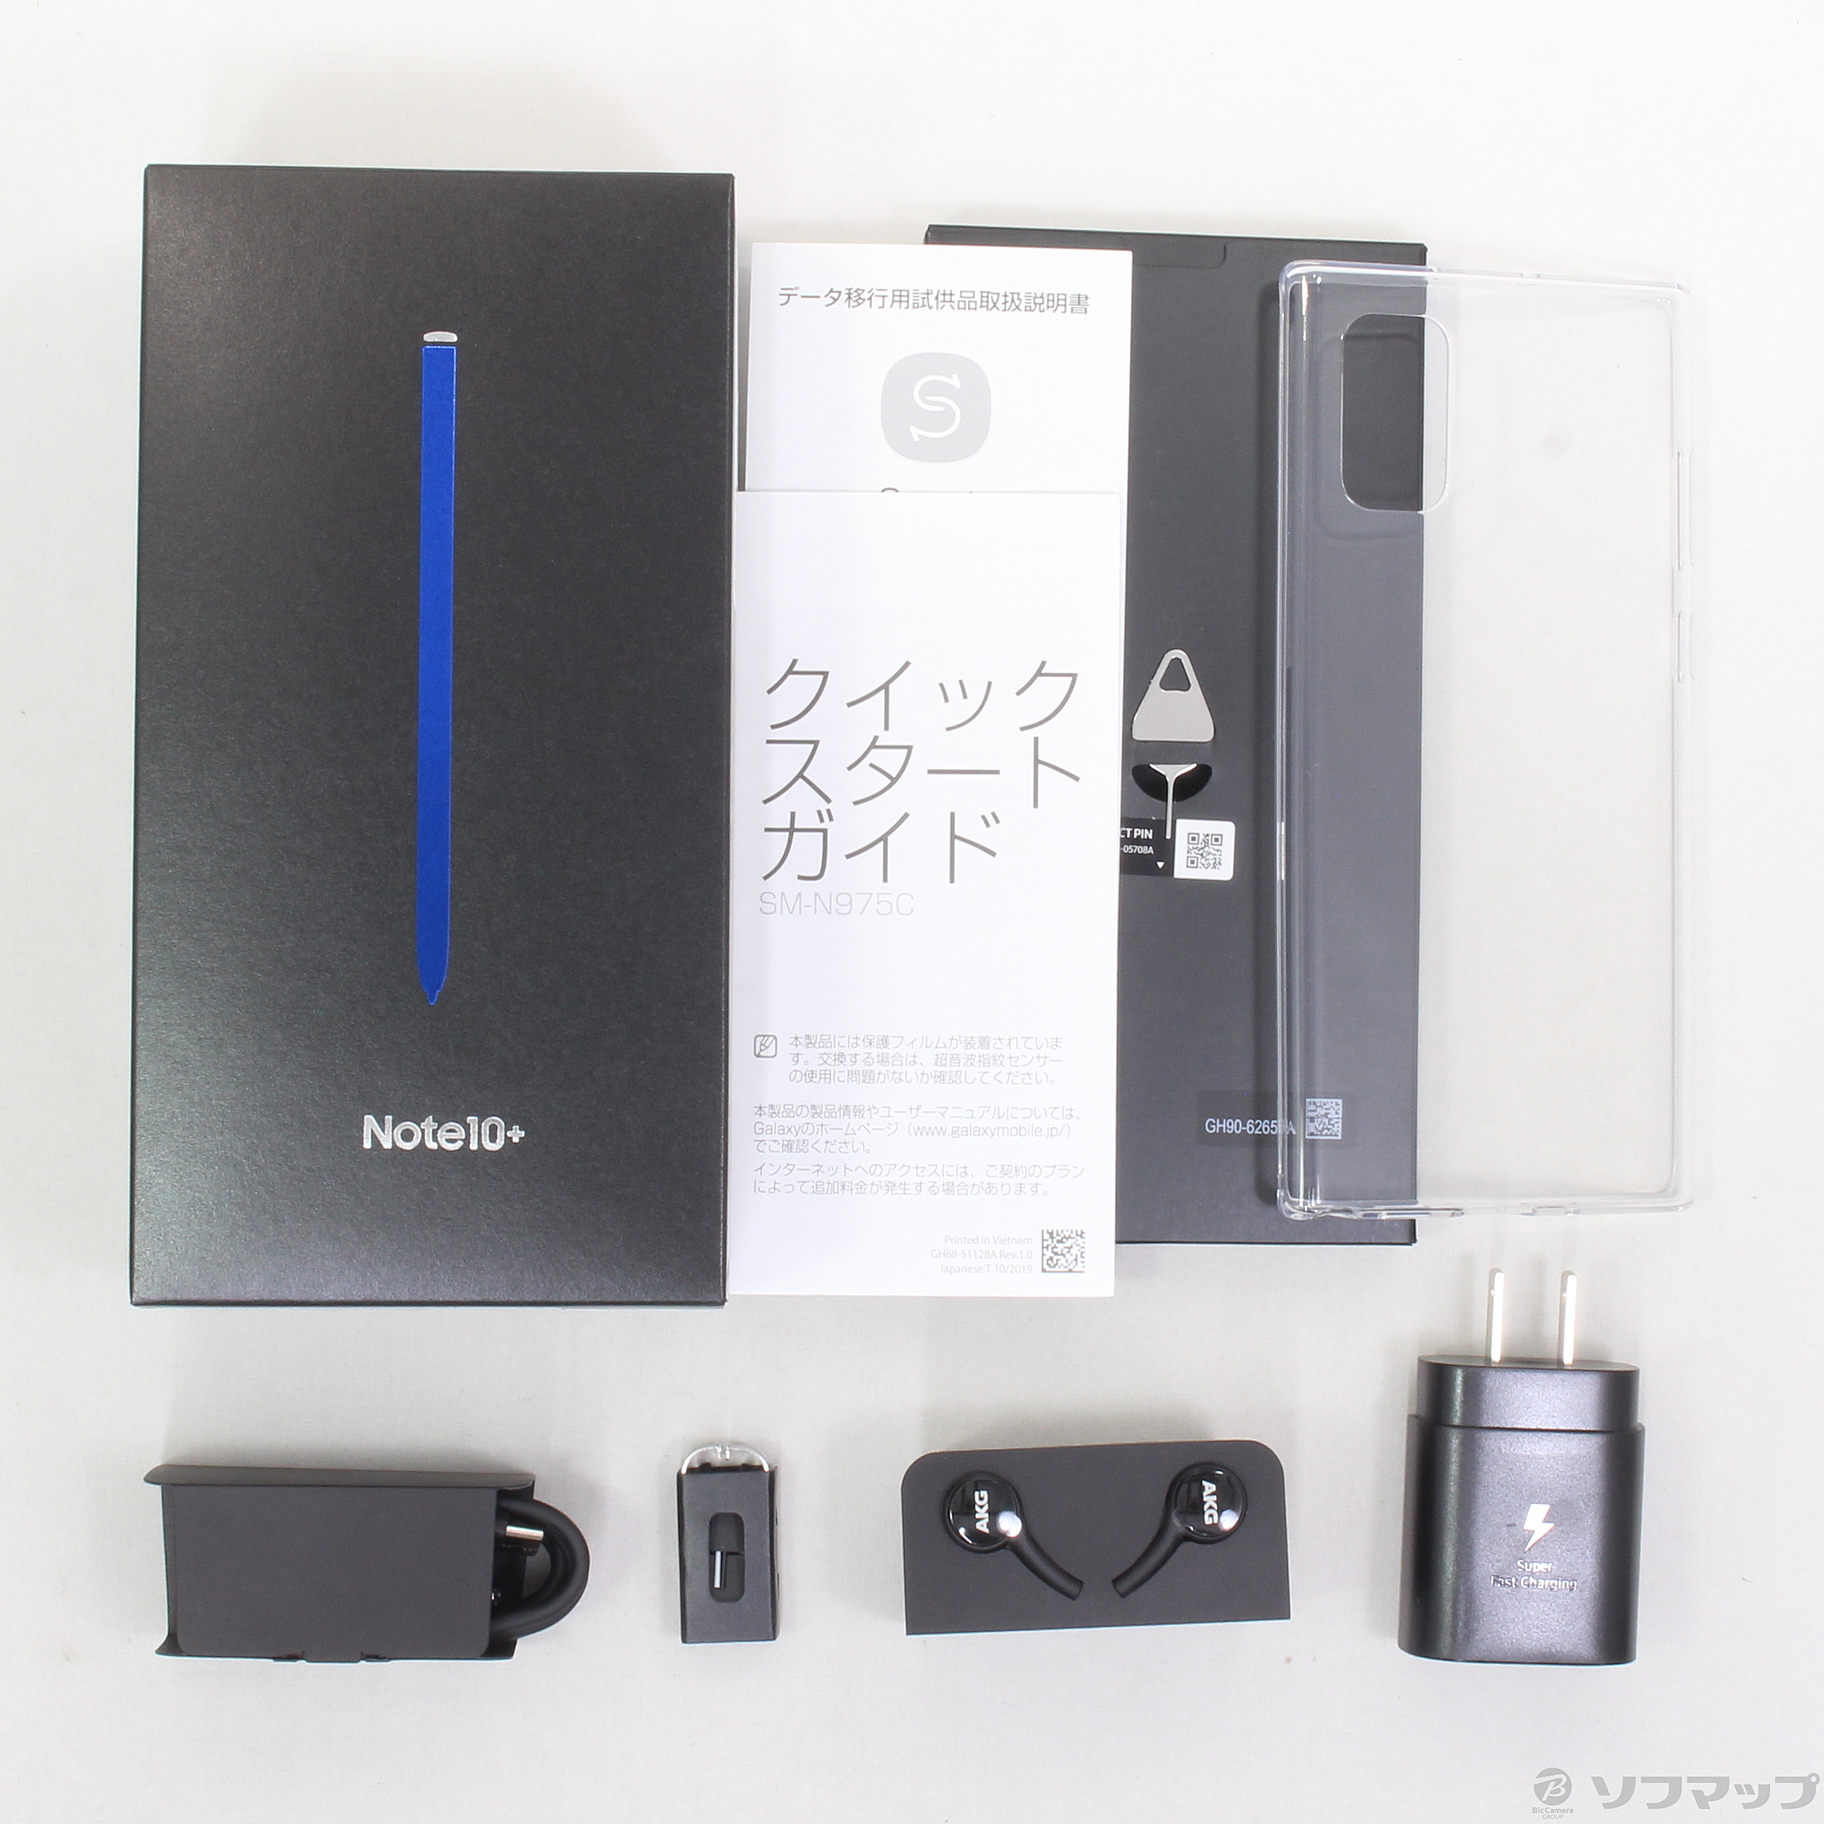 美品 Galaxy Note10+ 256GB ブラック☆ SM-N975C | www